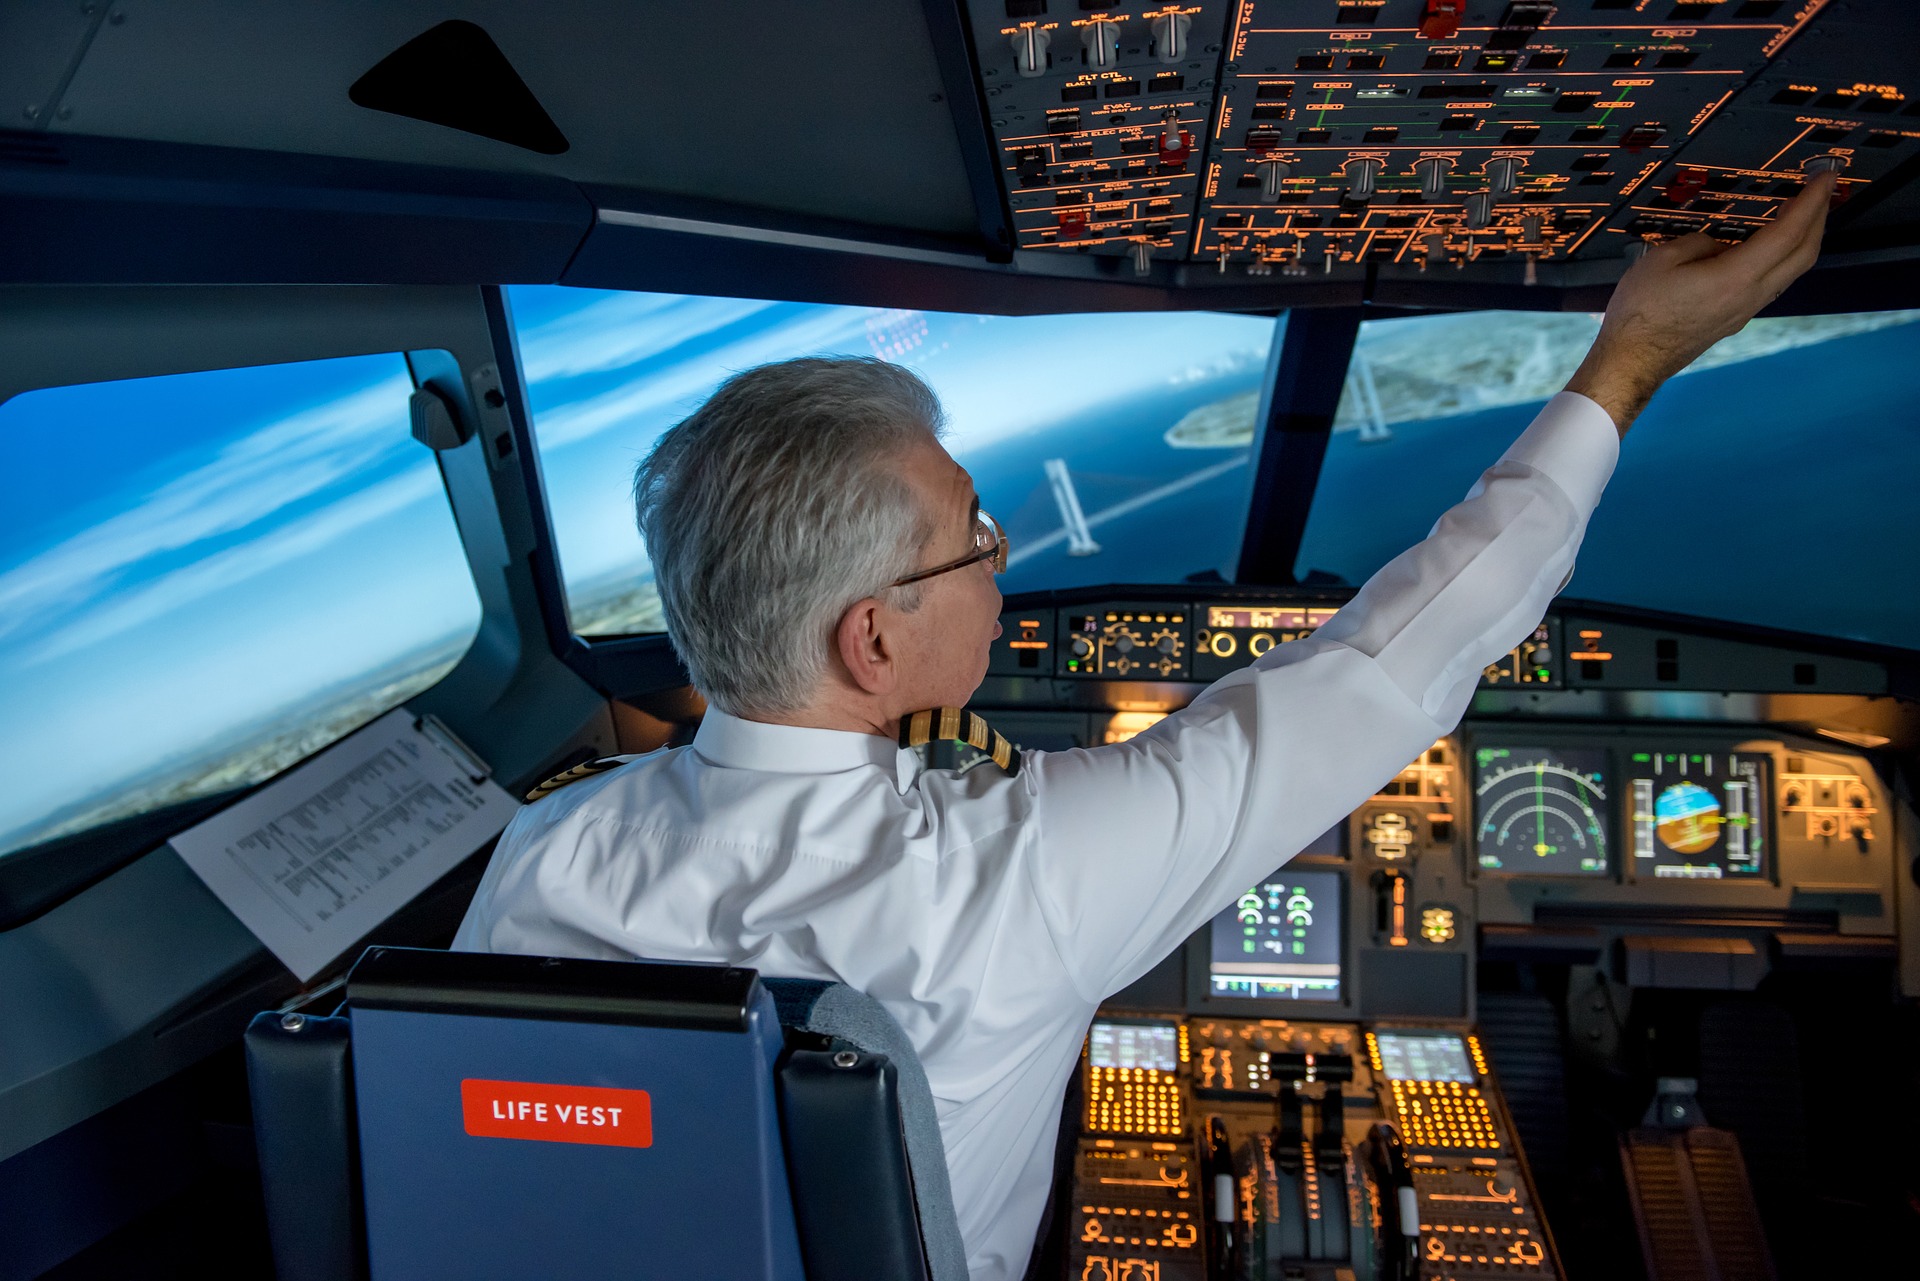 Piloten staan bekend om hun stressbestendigheid, discipline, zelfbewustzijn en vermogen om snel informatie te analyseren.